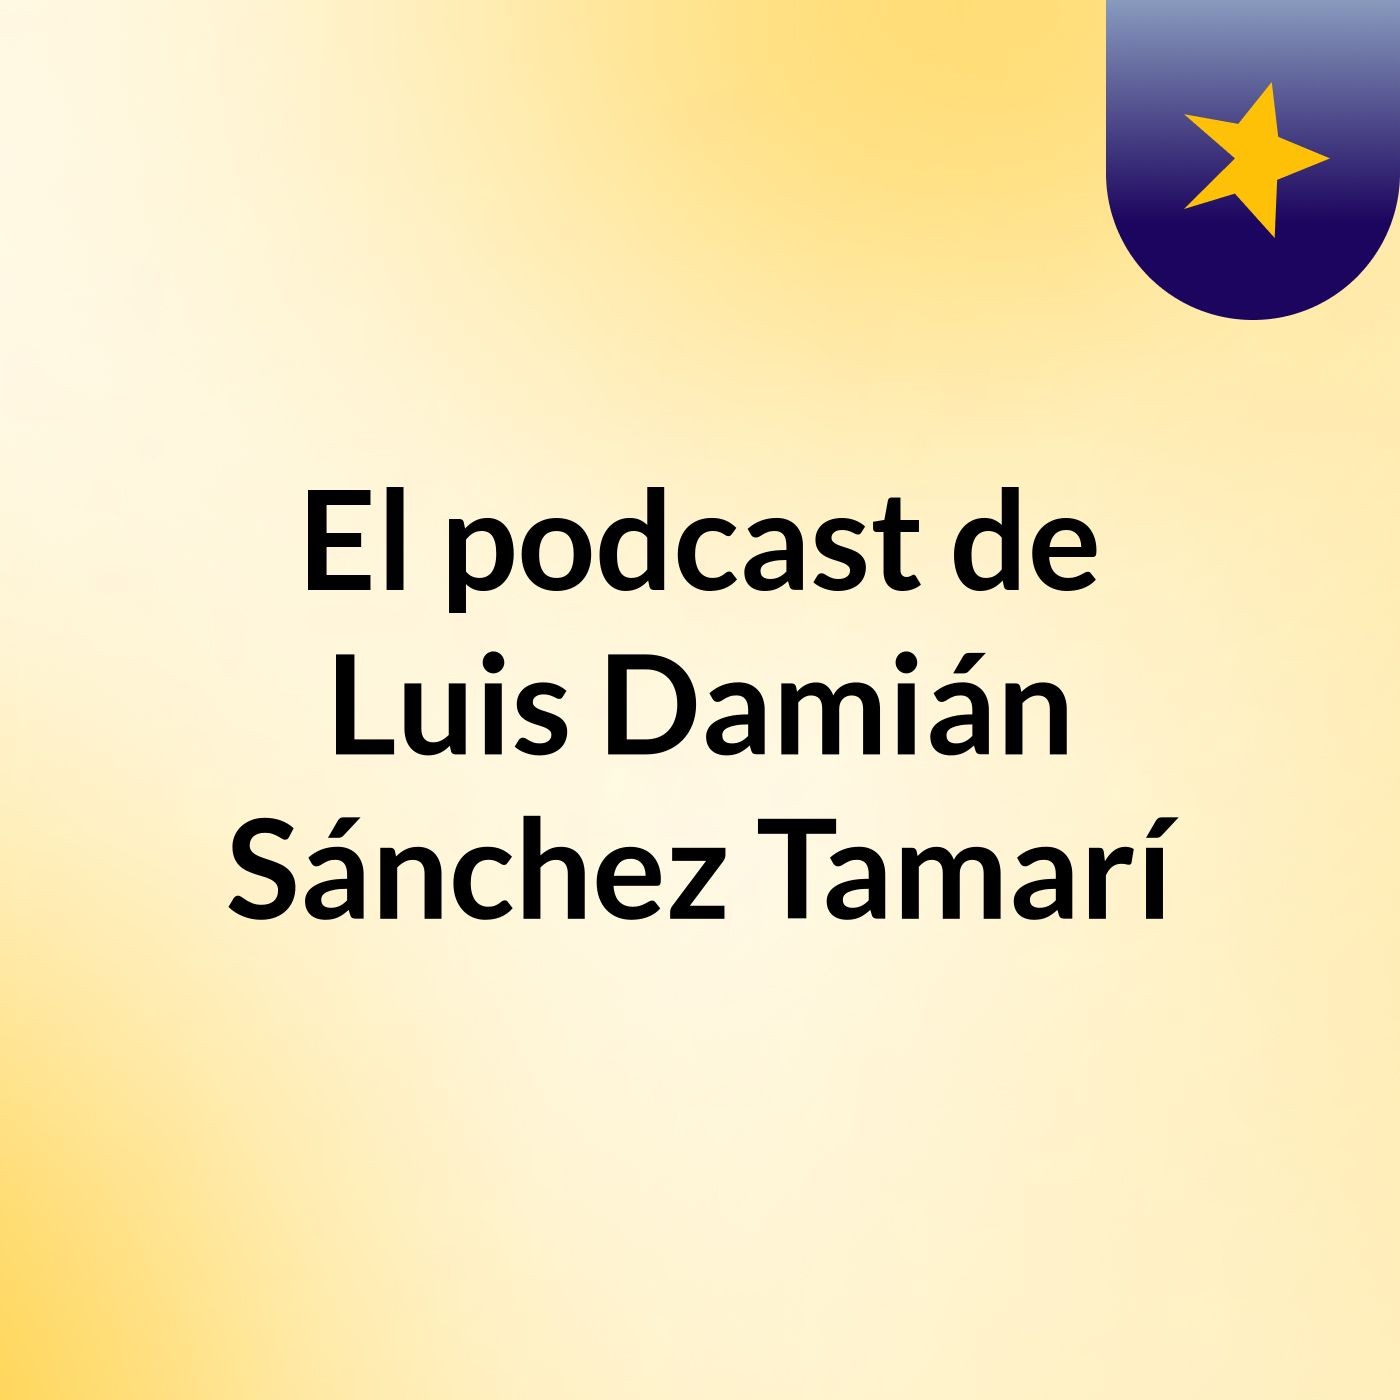 El podcast de Luis Damián Sánchez Tamarí